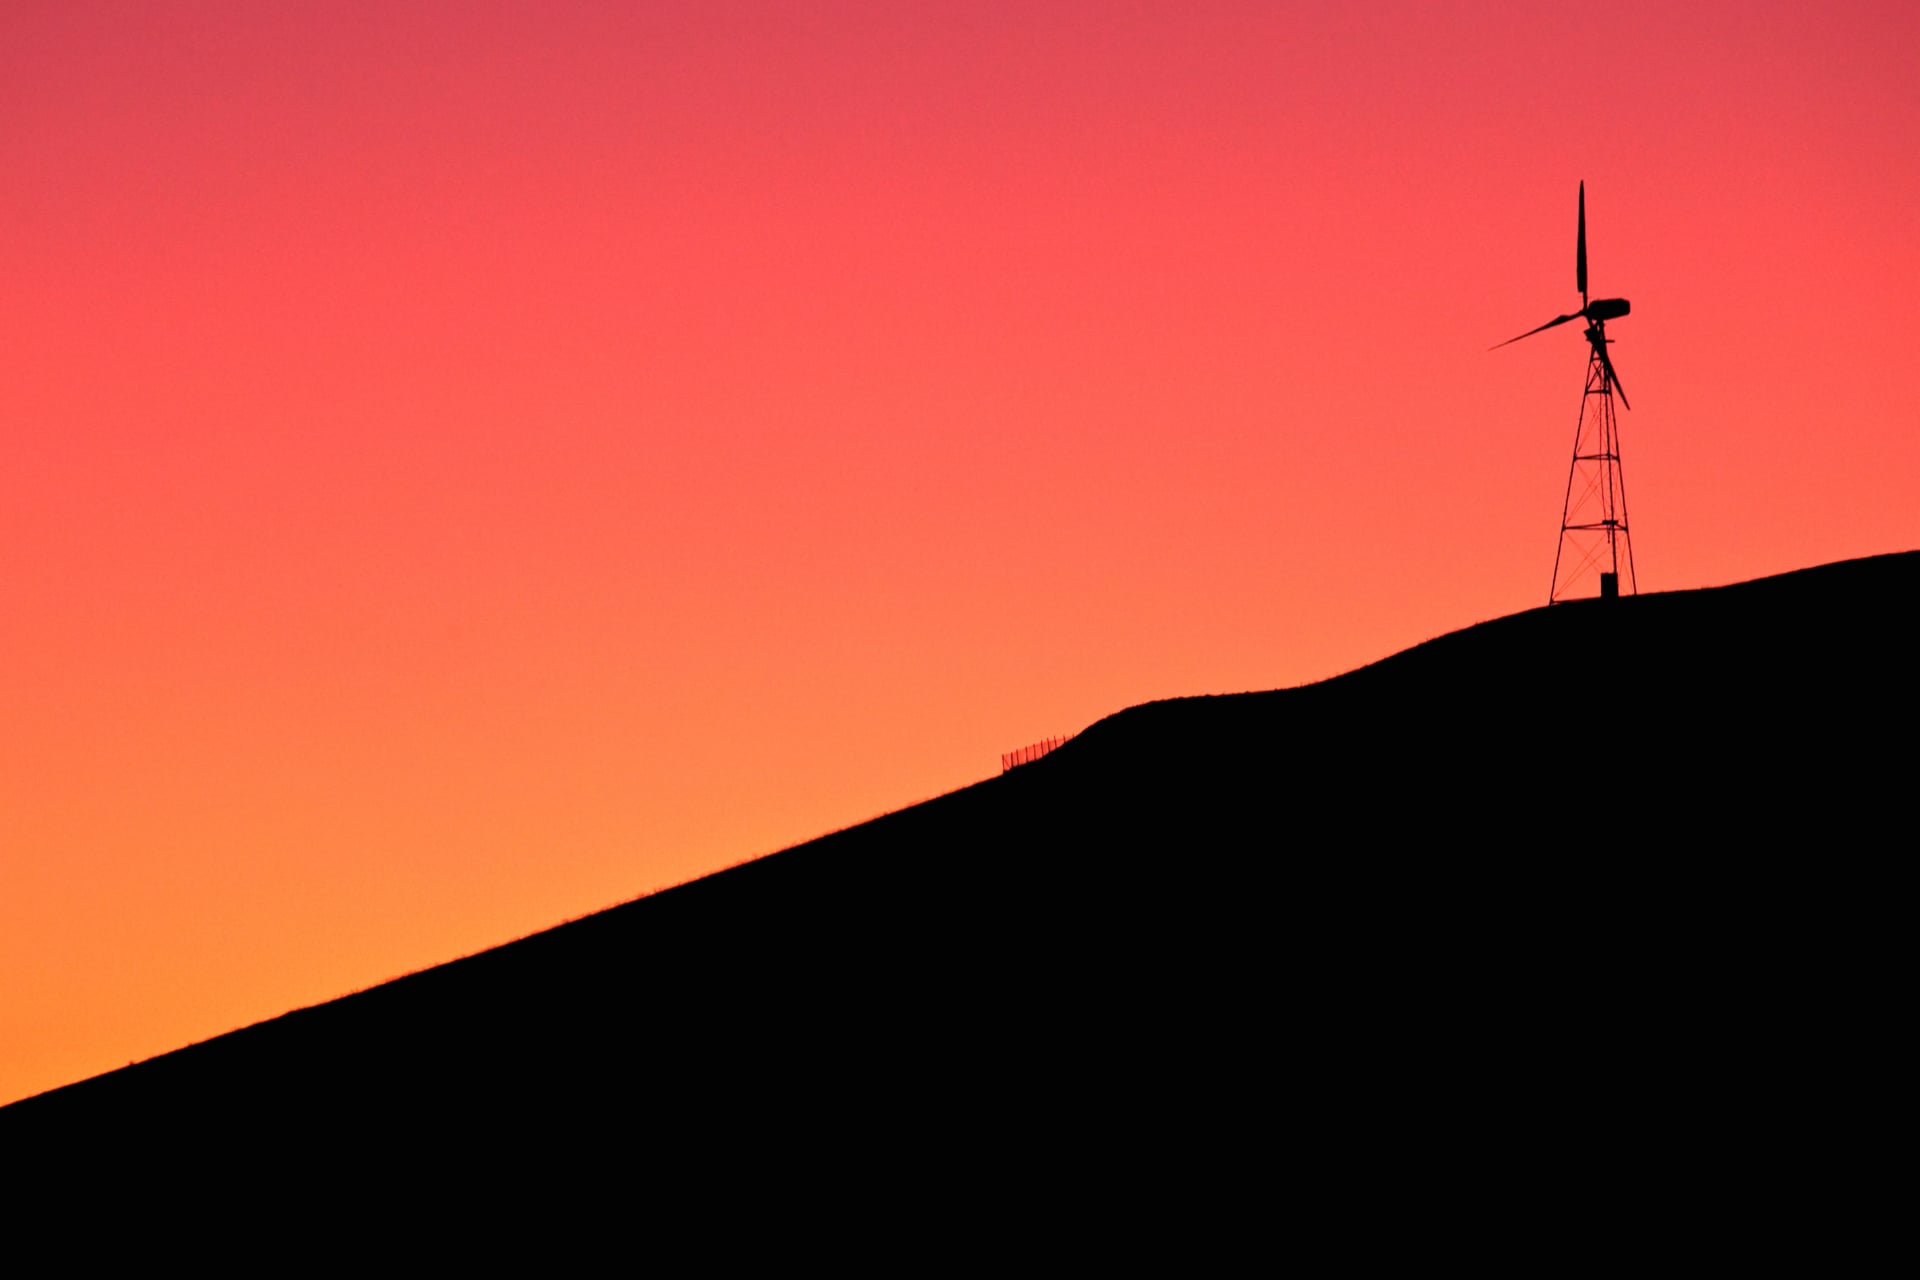 Digital Art Windmill at 1600 x 1200 size wallpapers HD quality